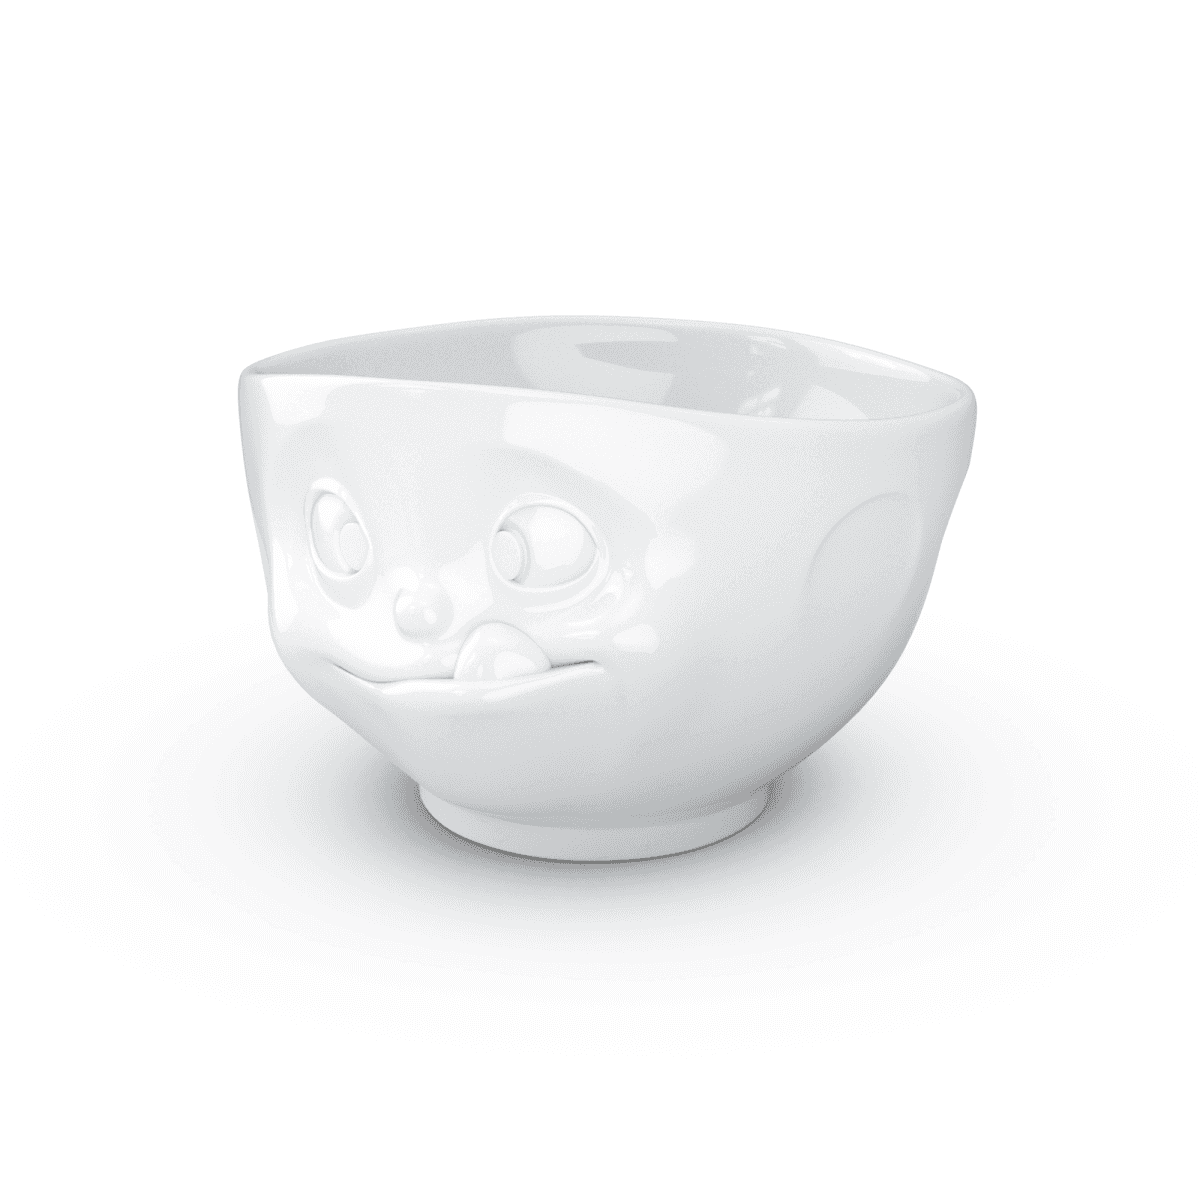 Immagine del prodotto Ciotola Goloso 3D in Porcellana 500 ml | TASSEN By Fiftyeight Products